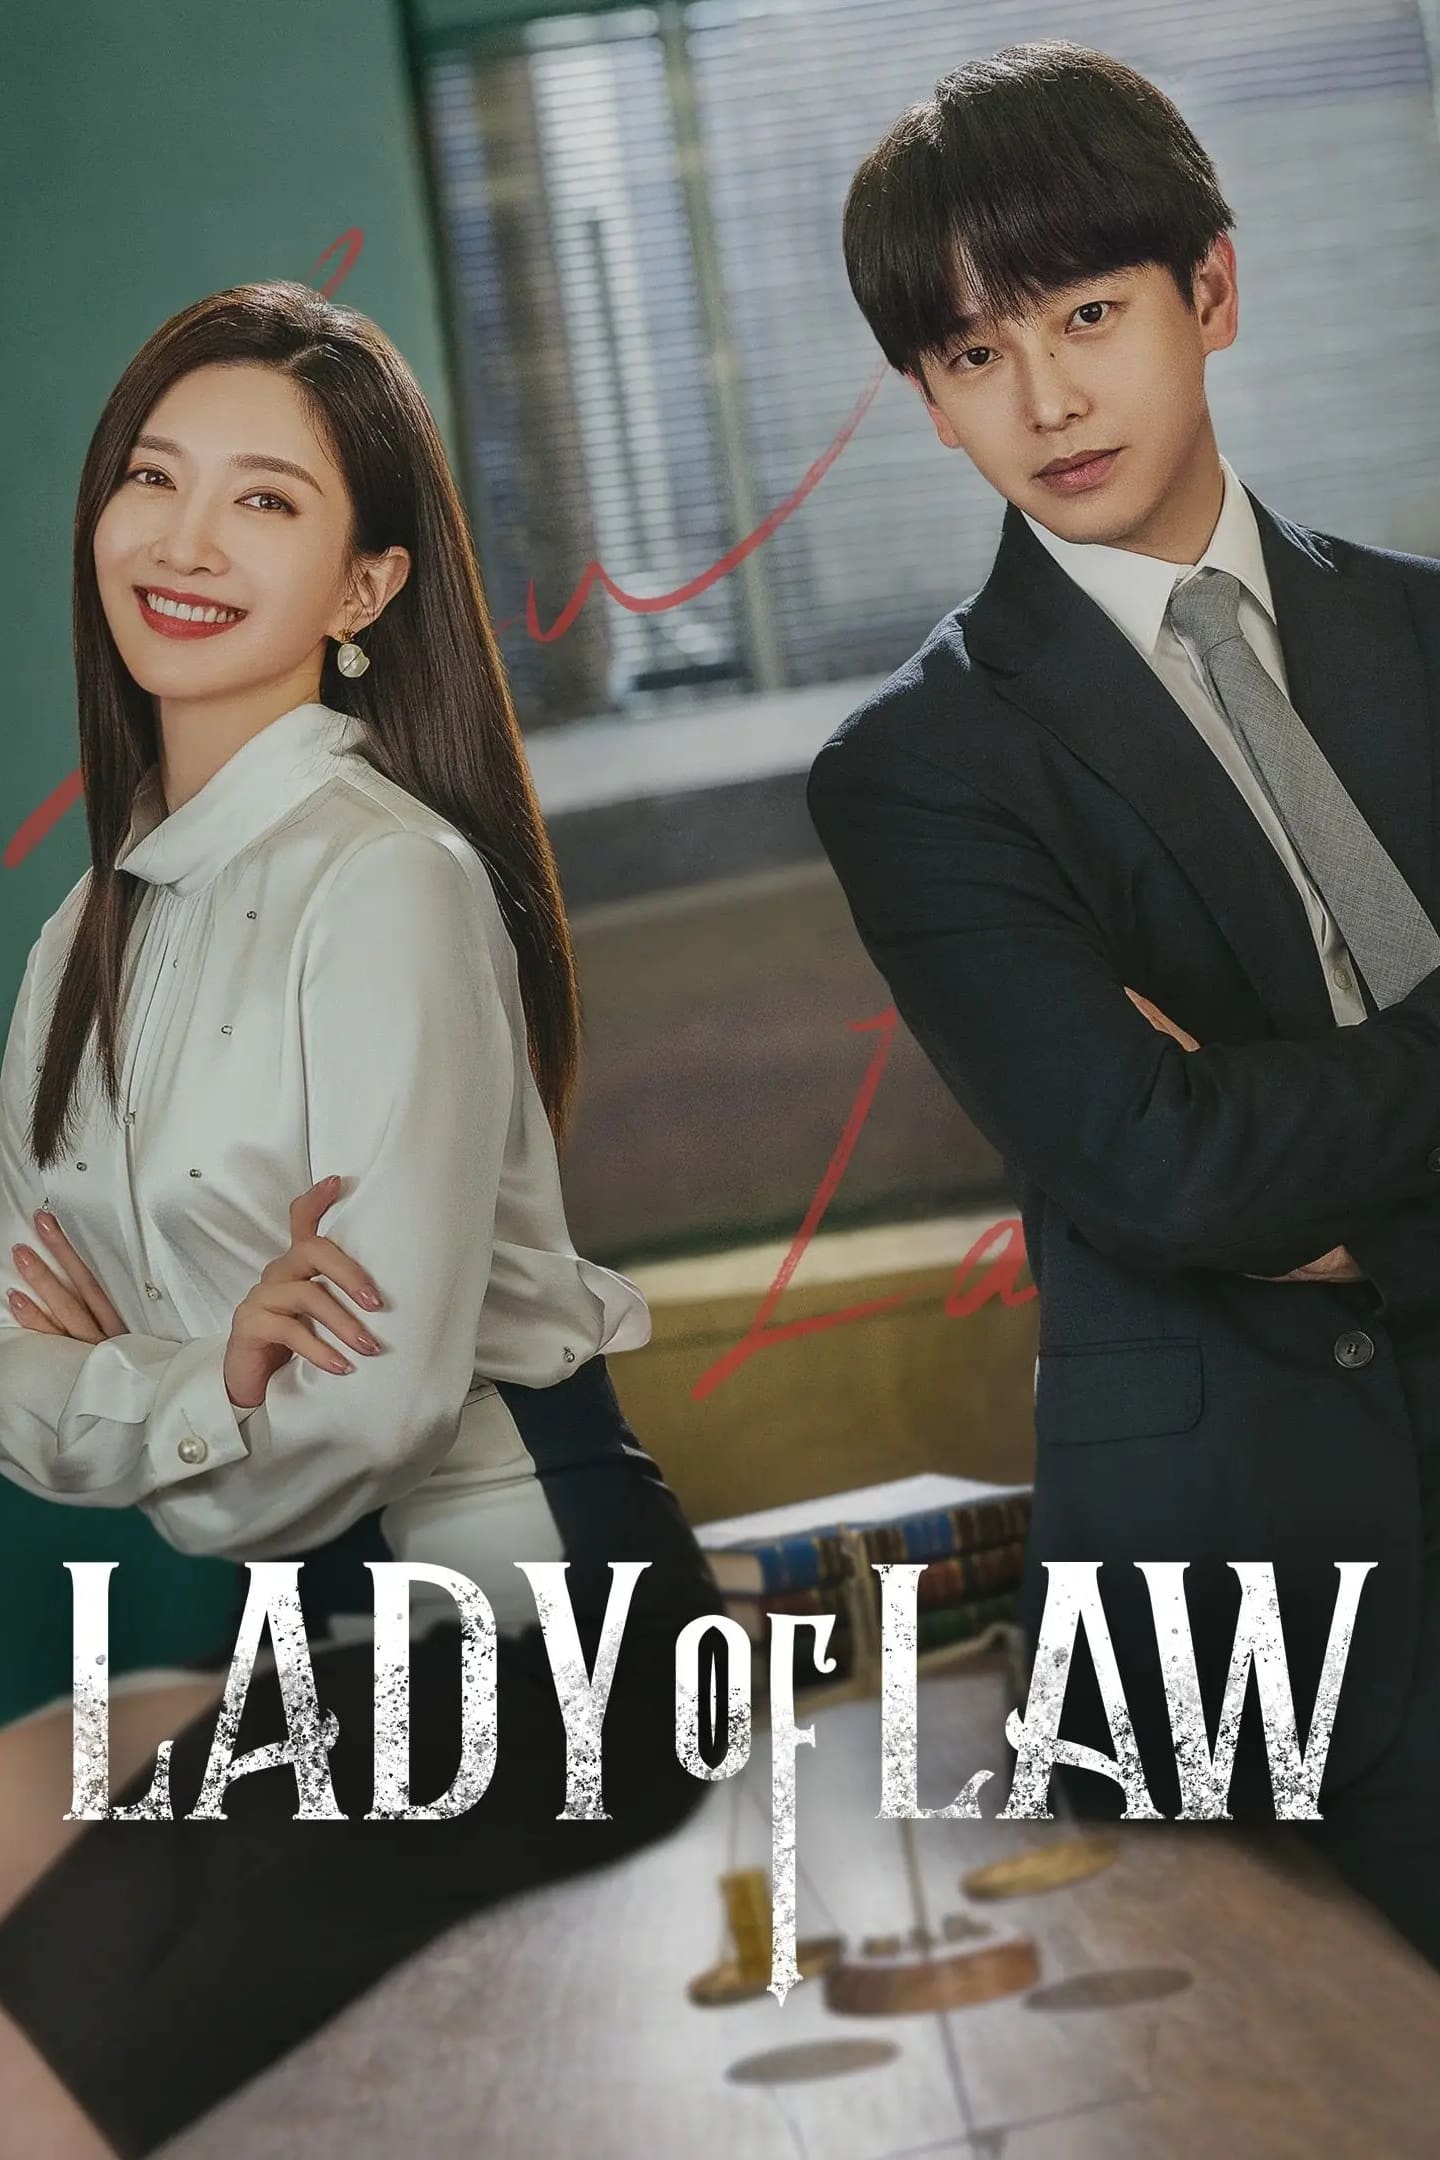 女士的法則 TV Shows About Lawyer